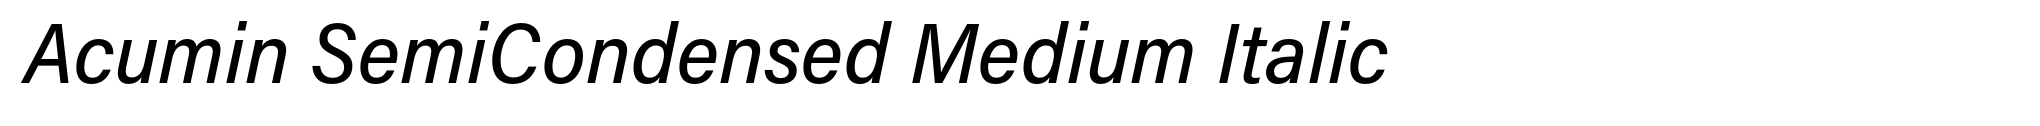 Acumin SemiCondensed Medium Italic image